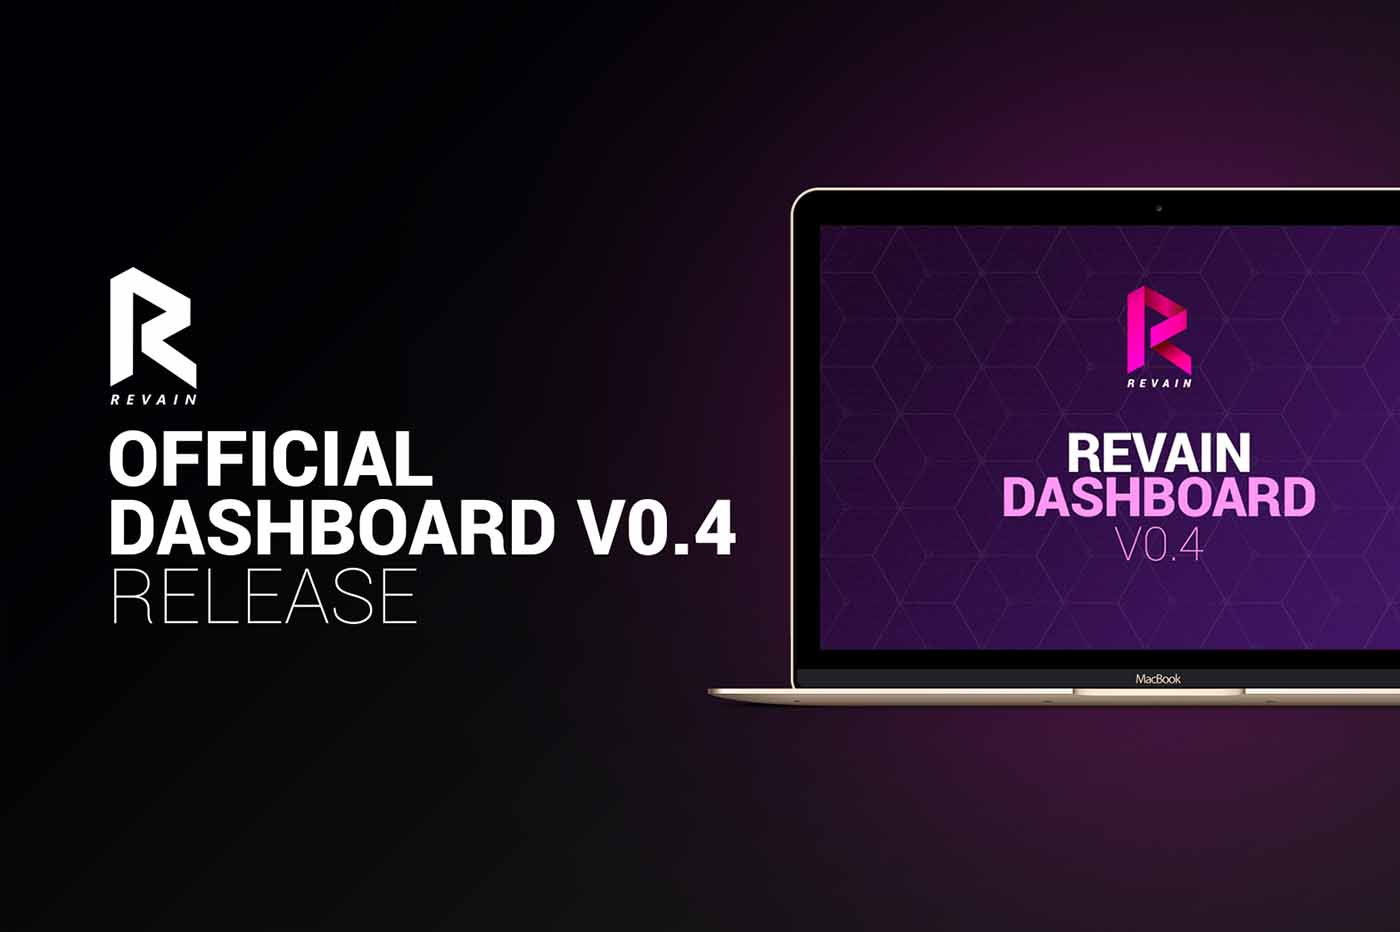 Revain announces platform’s v0.4 release